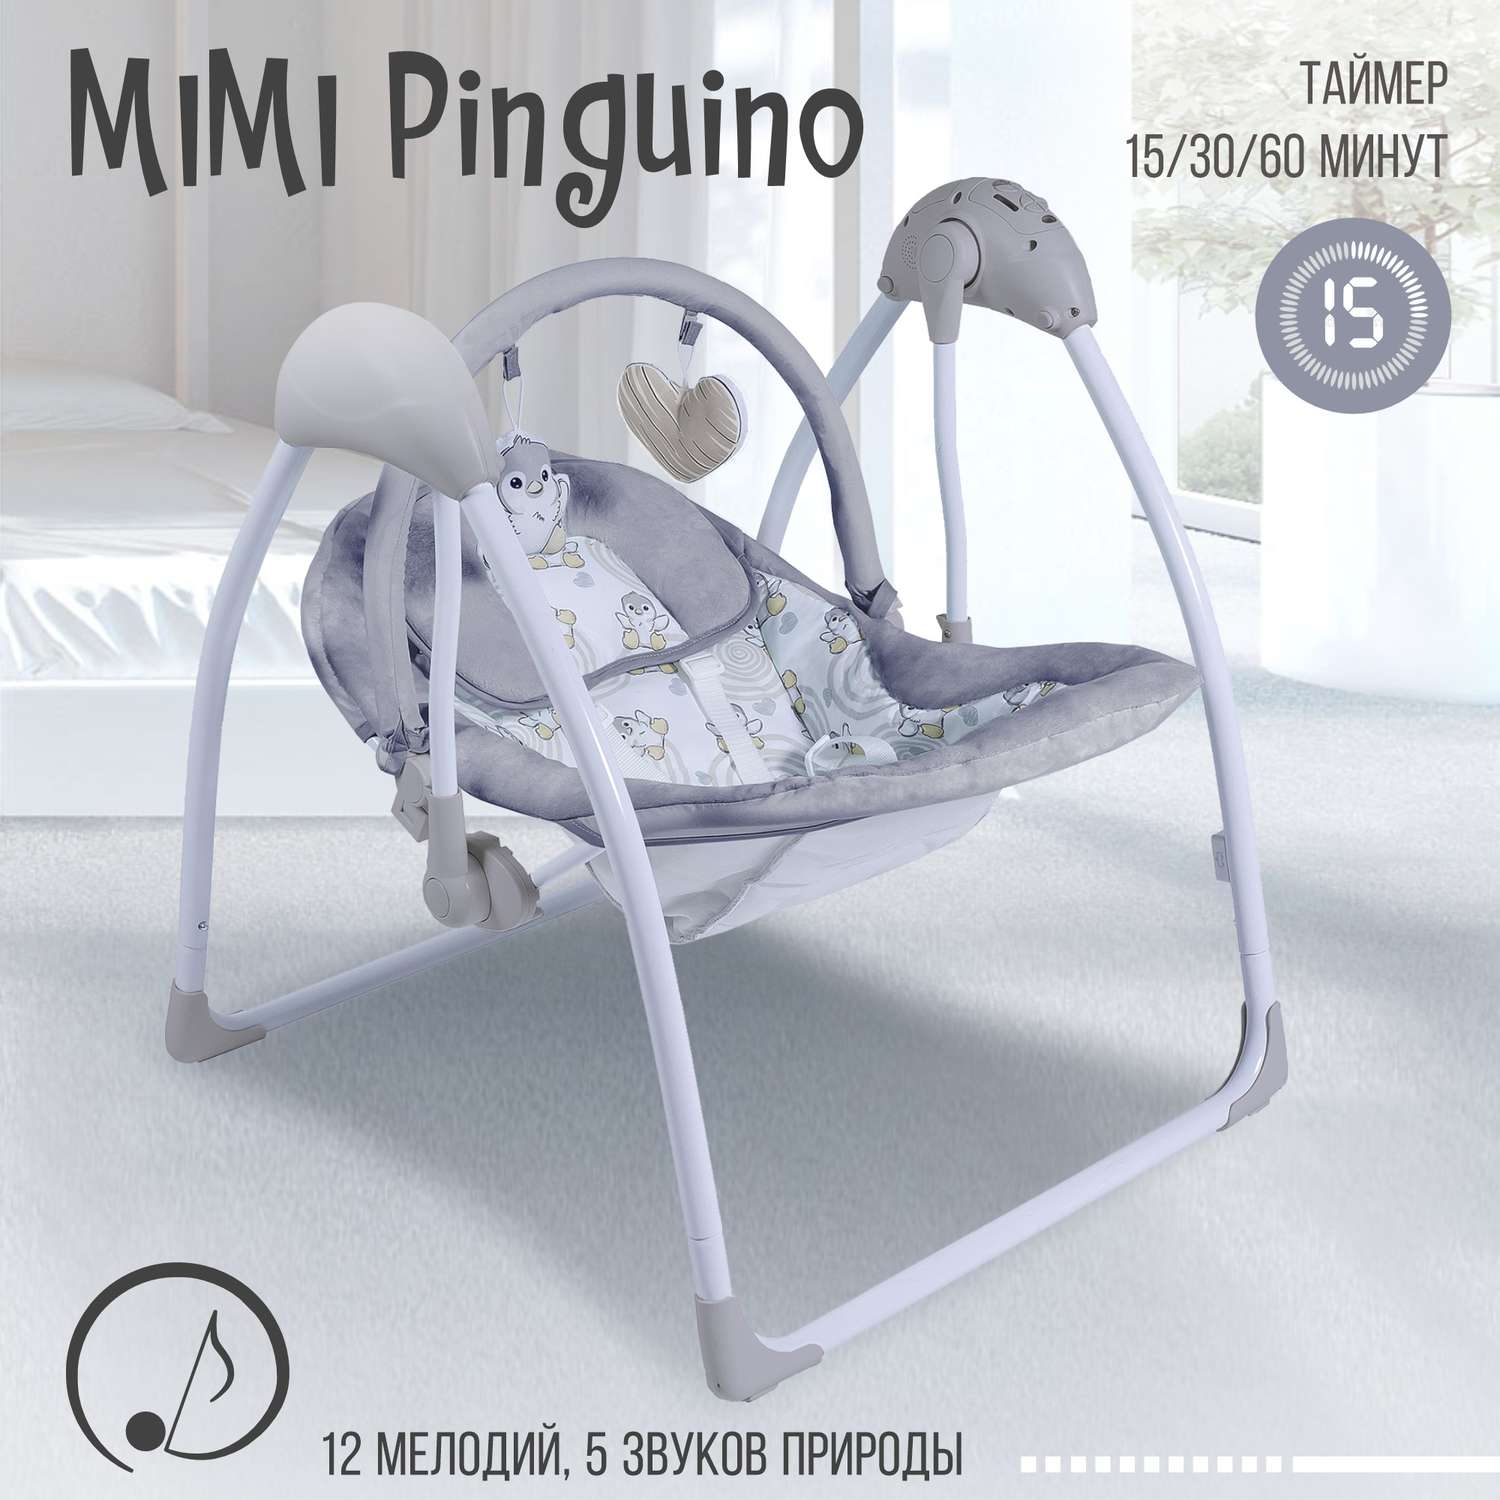 Электрокачели Sweet Baby Mimi pinguino Grigio - фото 2